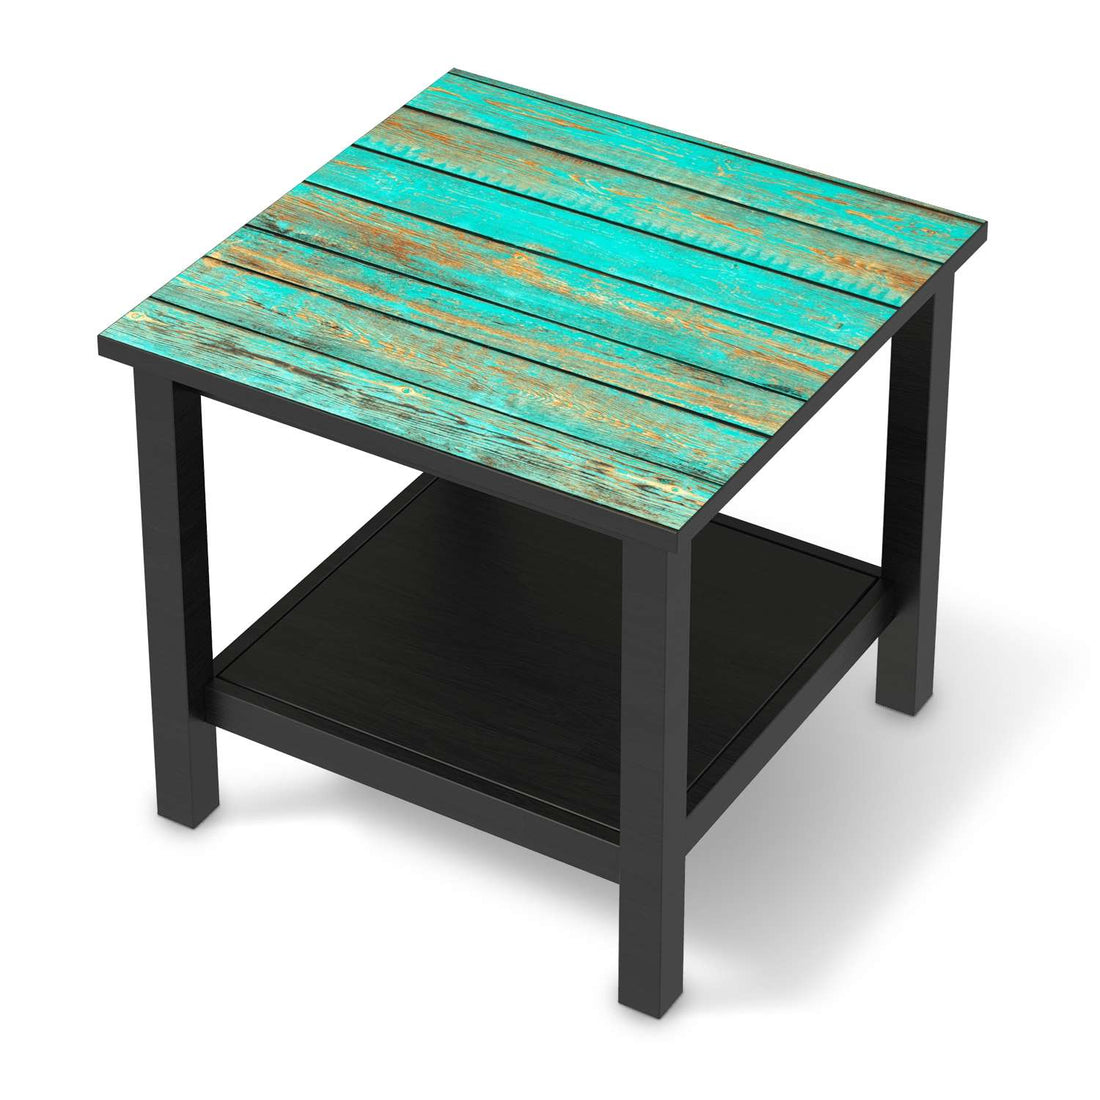 Möbel Klebefolie Wooden Aqua - IKEA Hemnes Beistelltisch 55x55 cm - schwarz